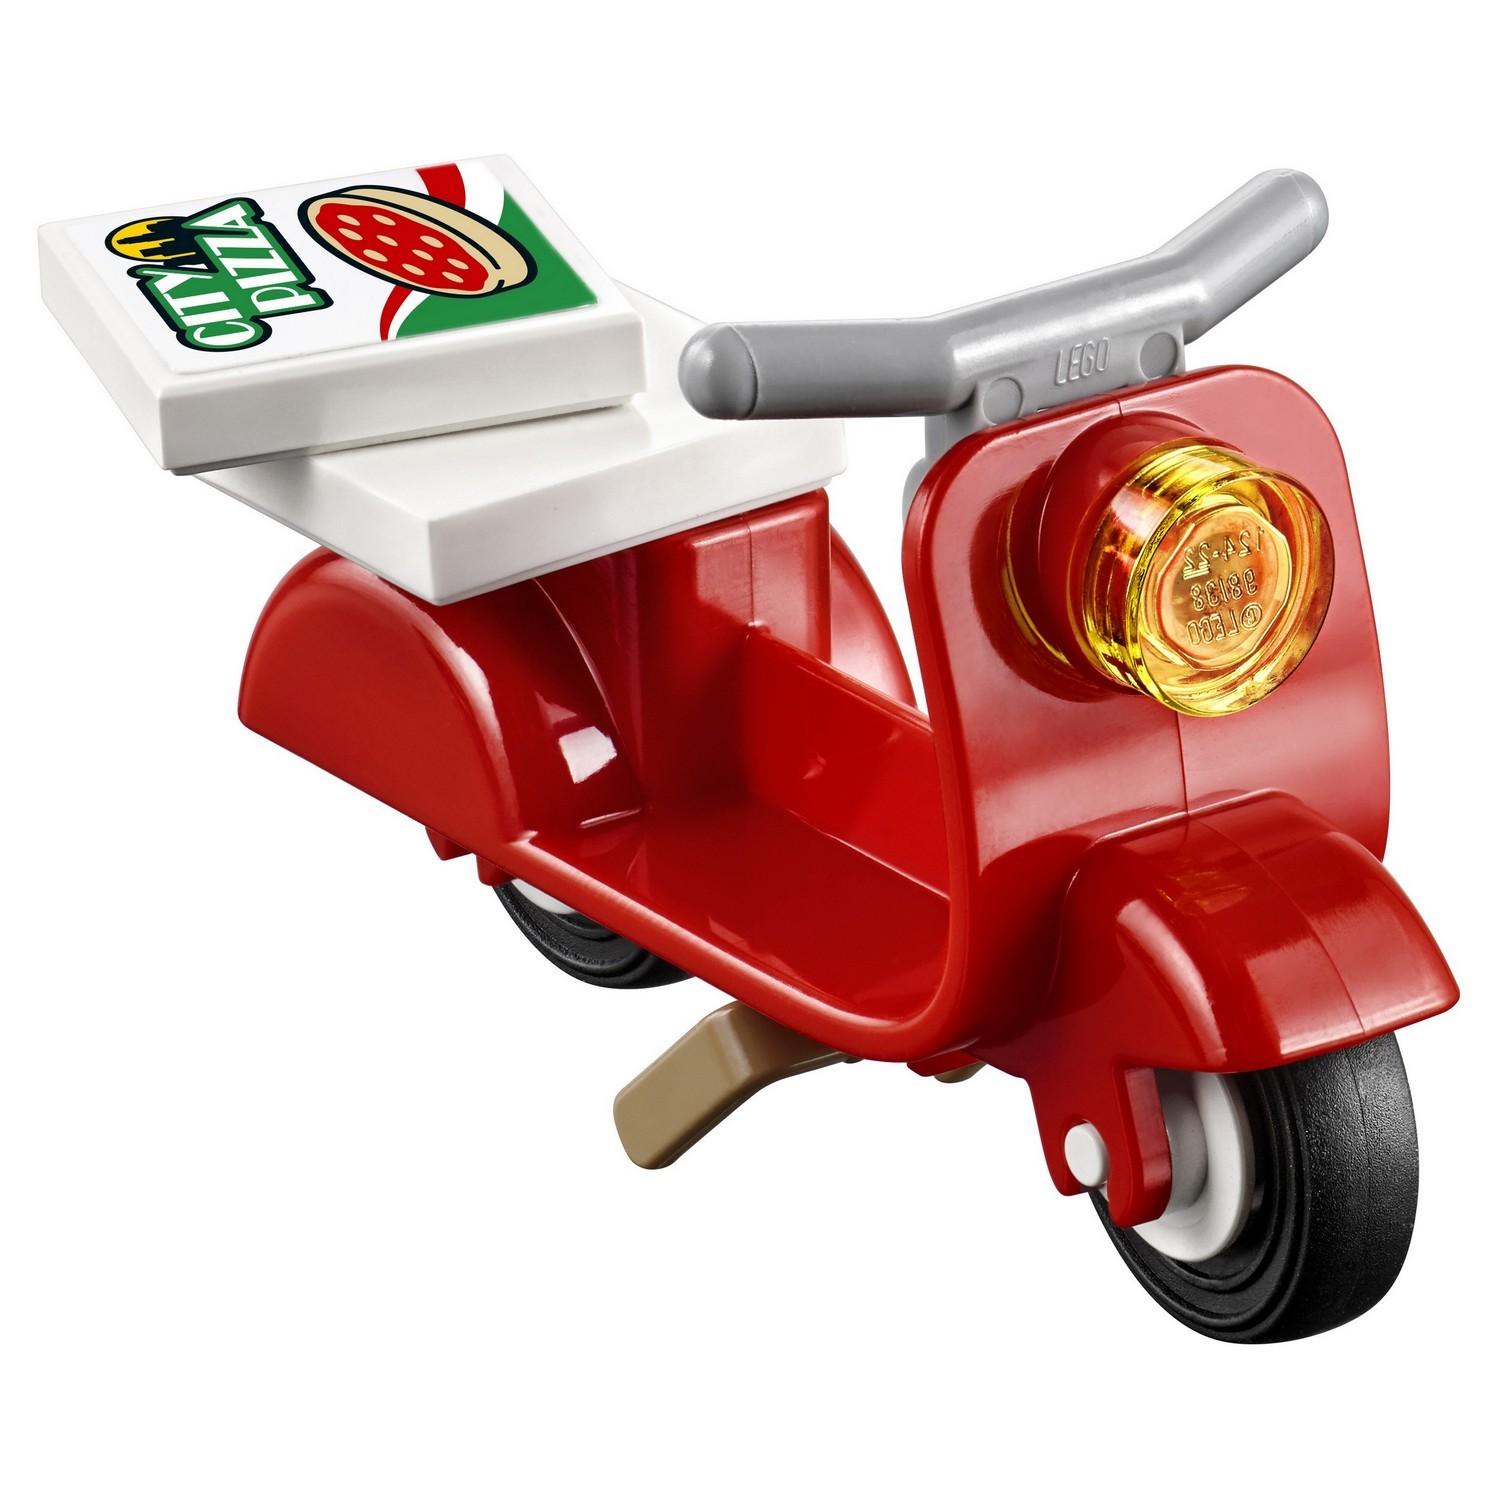 Lego City 60150 Фургон-пиццерия